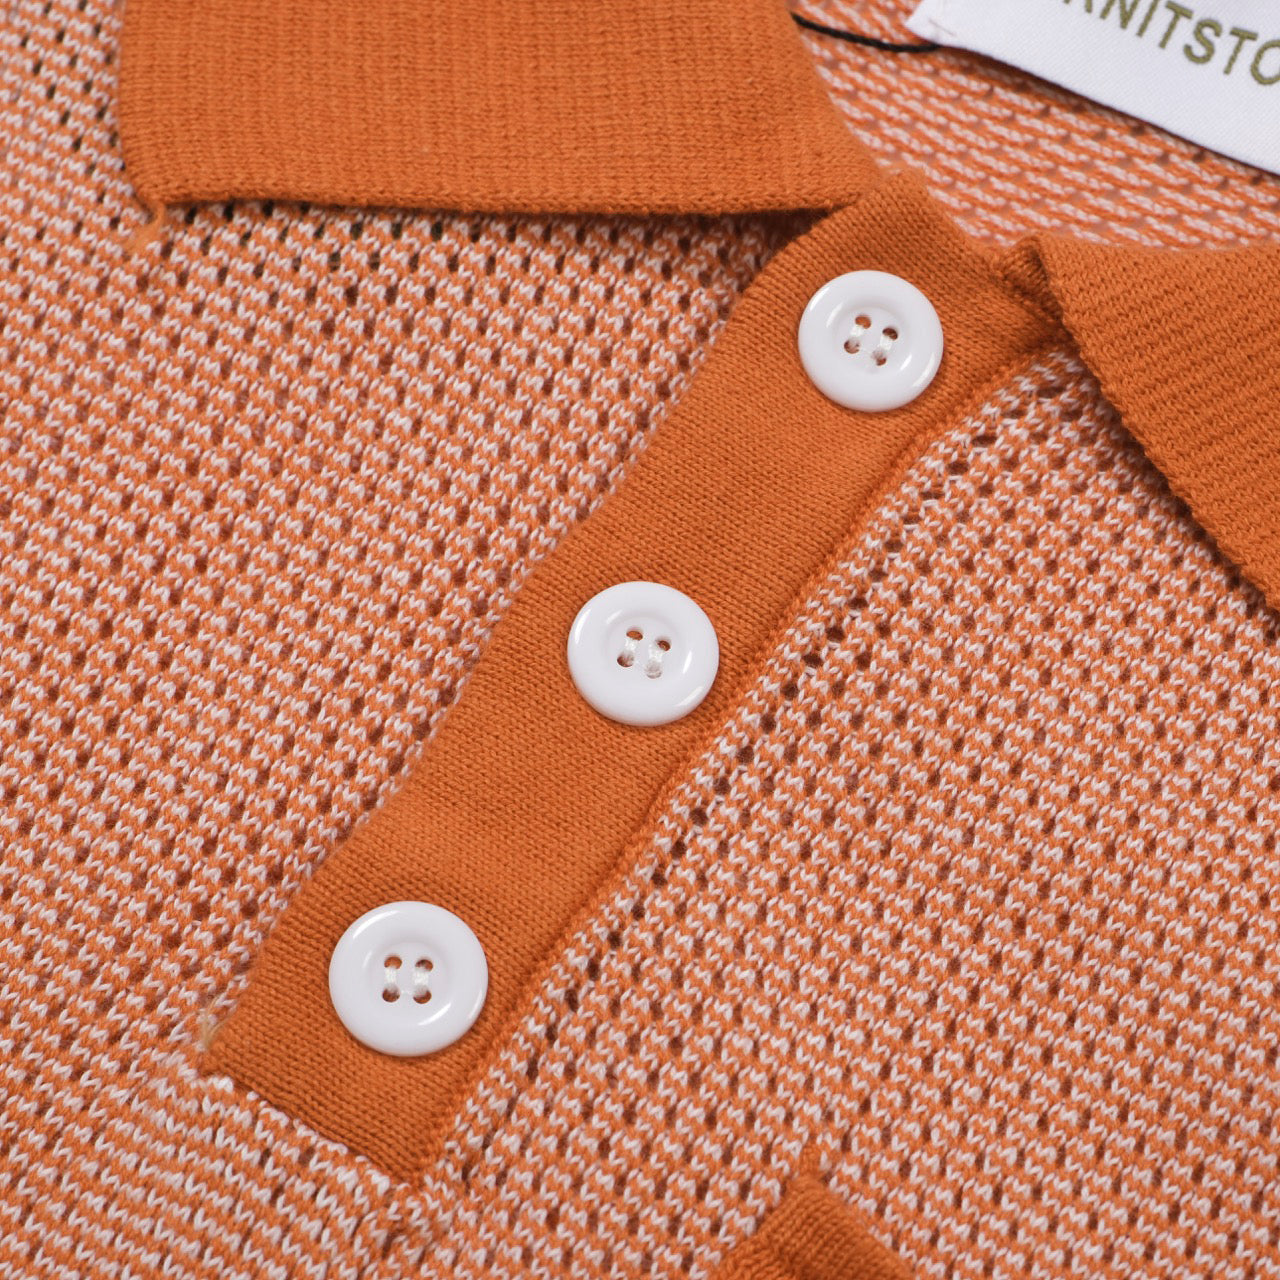 Polo rétro orange dégradé de style décontracté des années 1960 pour hommes